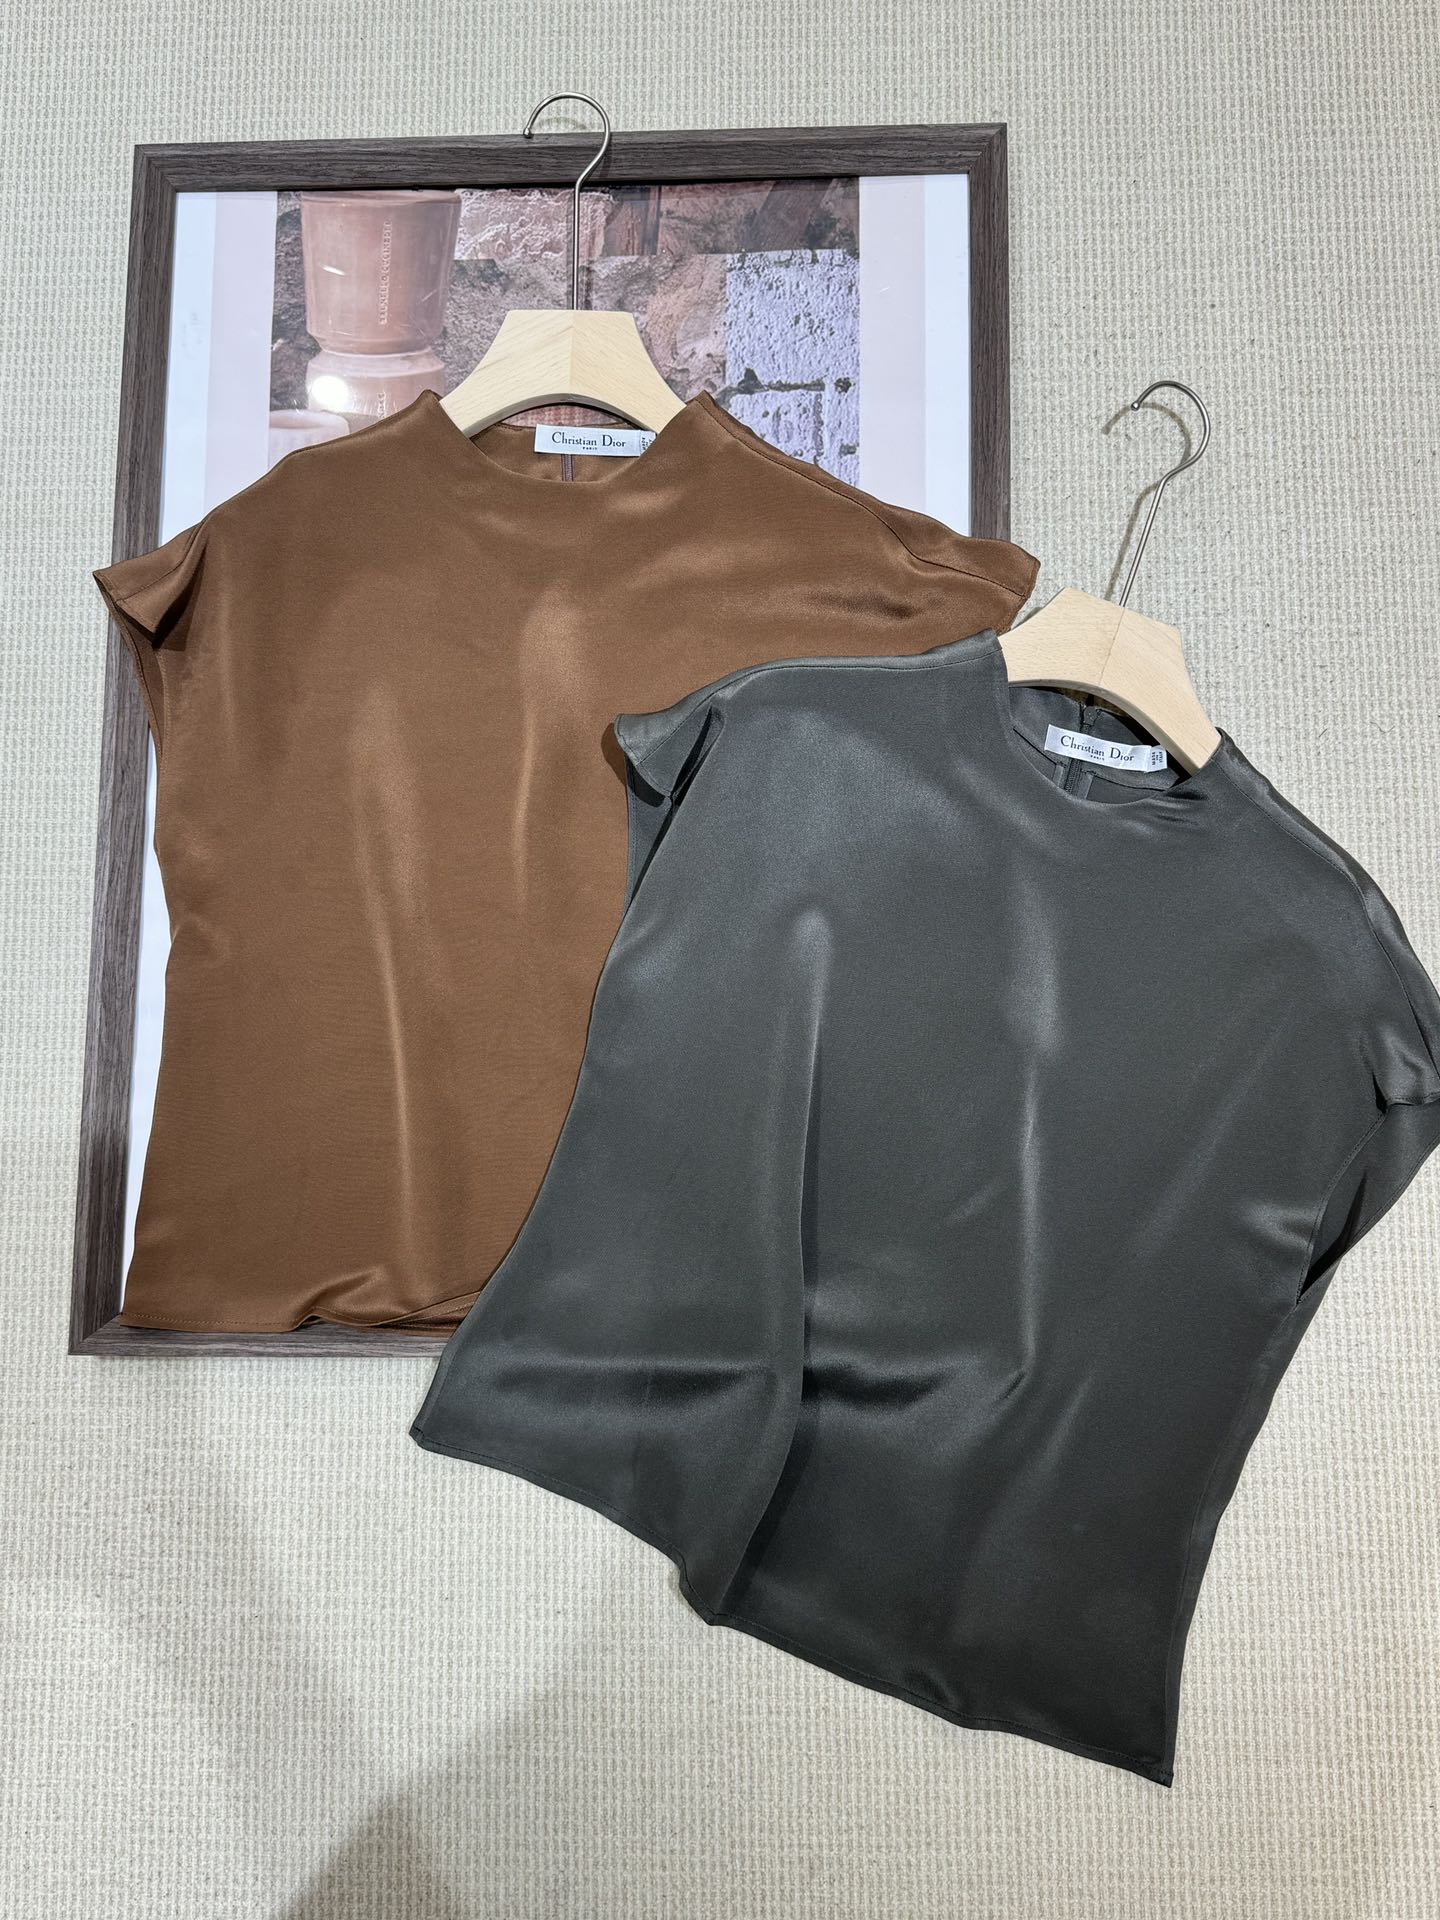 Dior On-line
 Roupa Camisas e Blusas Cinzento Colecção de Verão